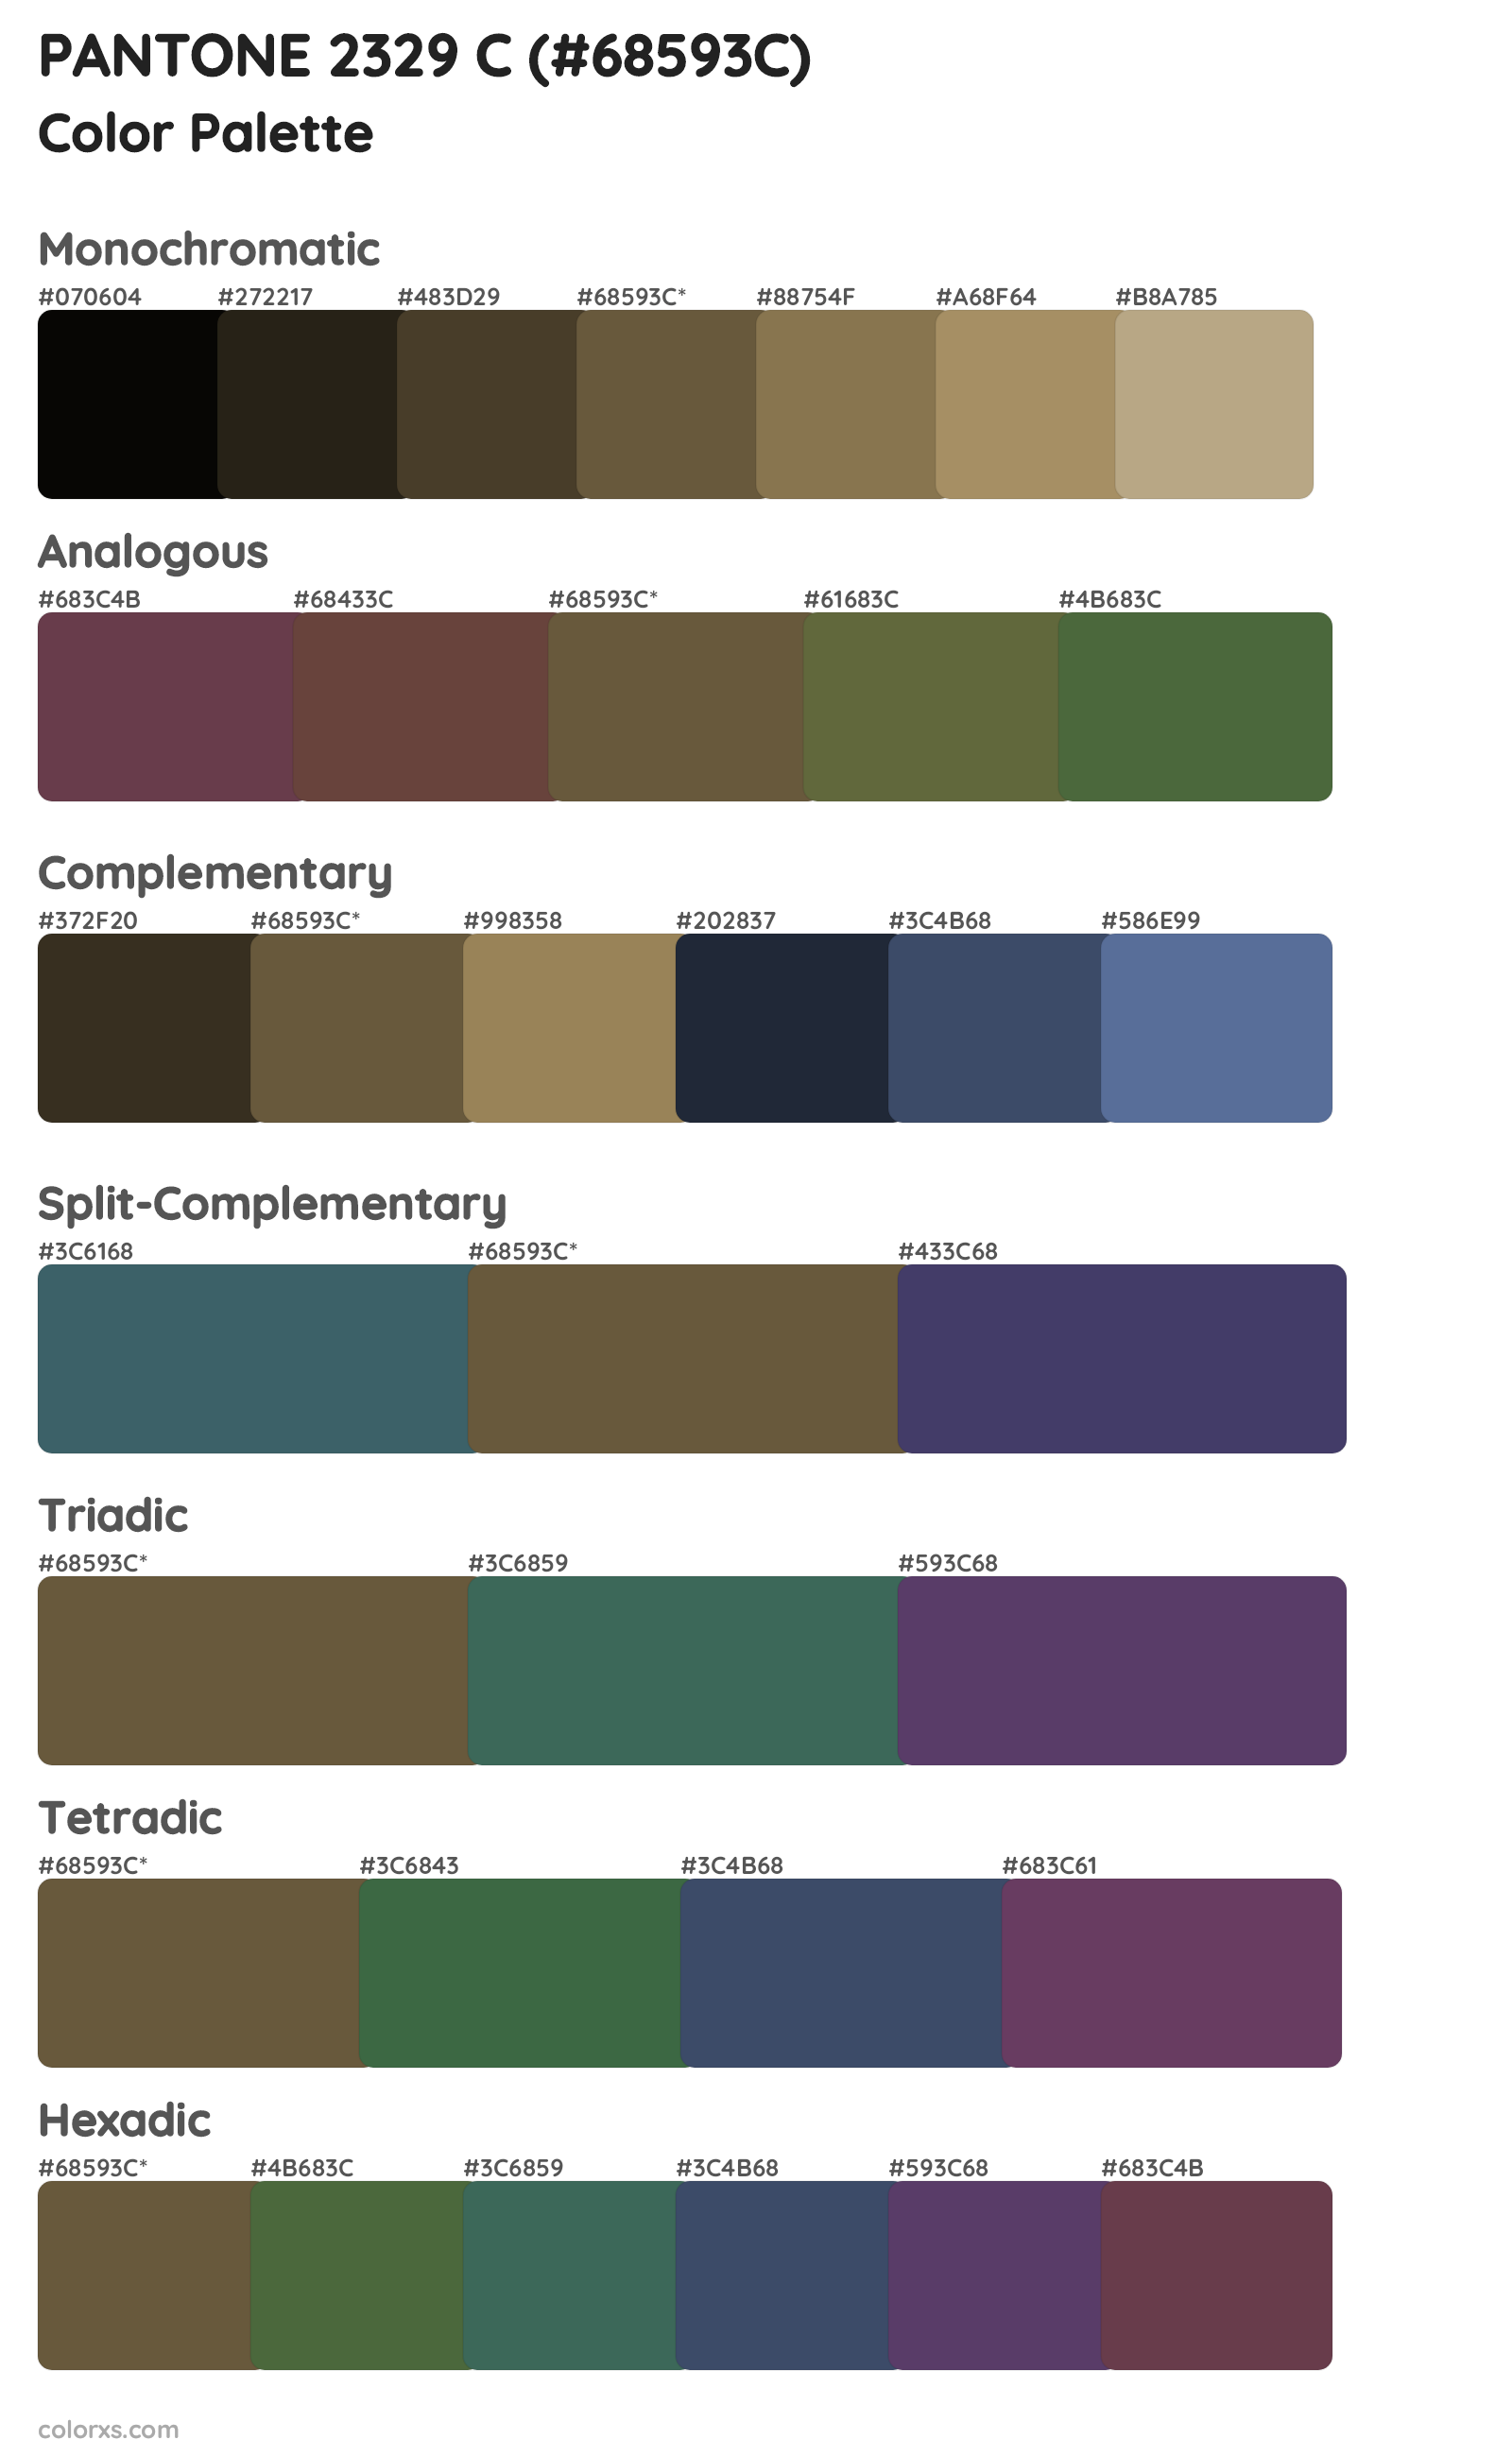 PANTONE 2329 C Color Scheme Palettes